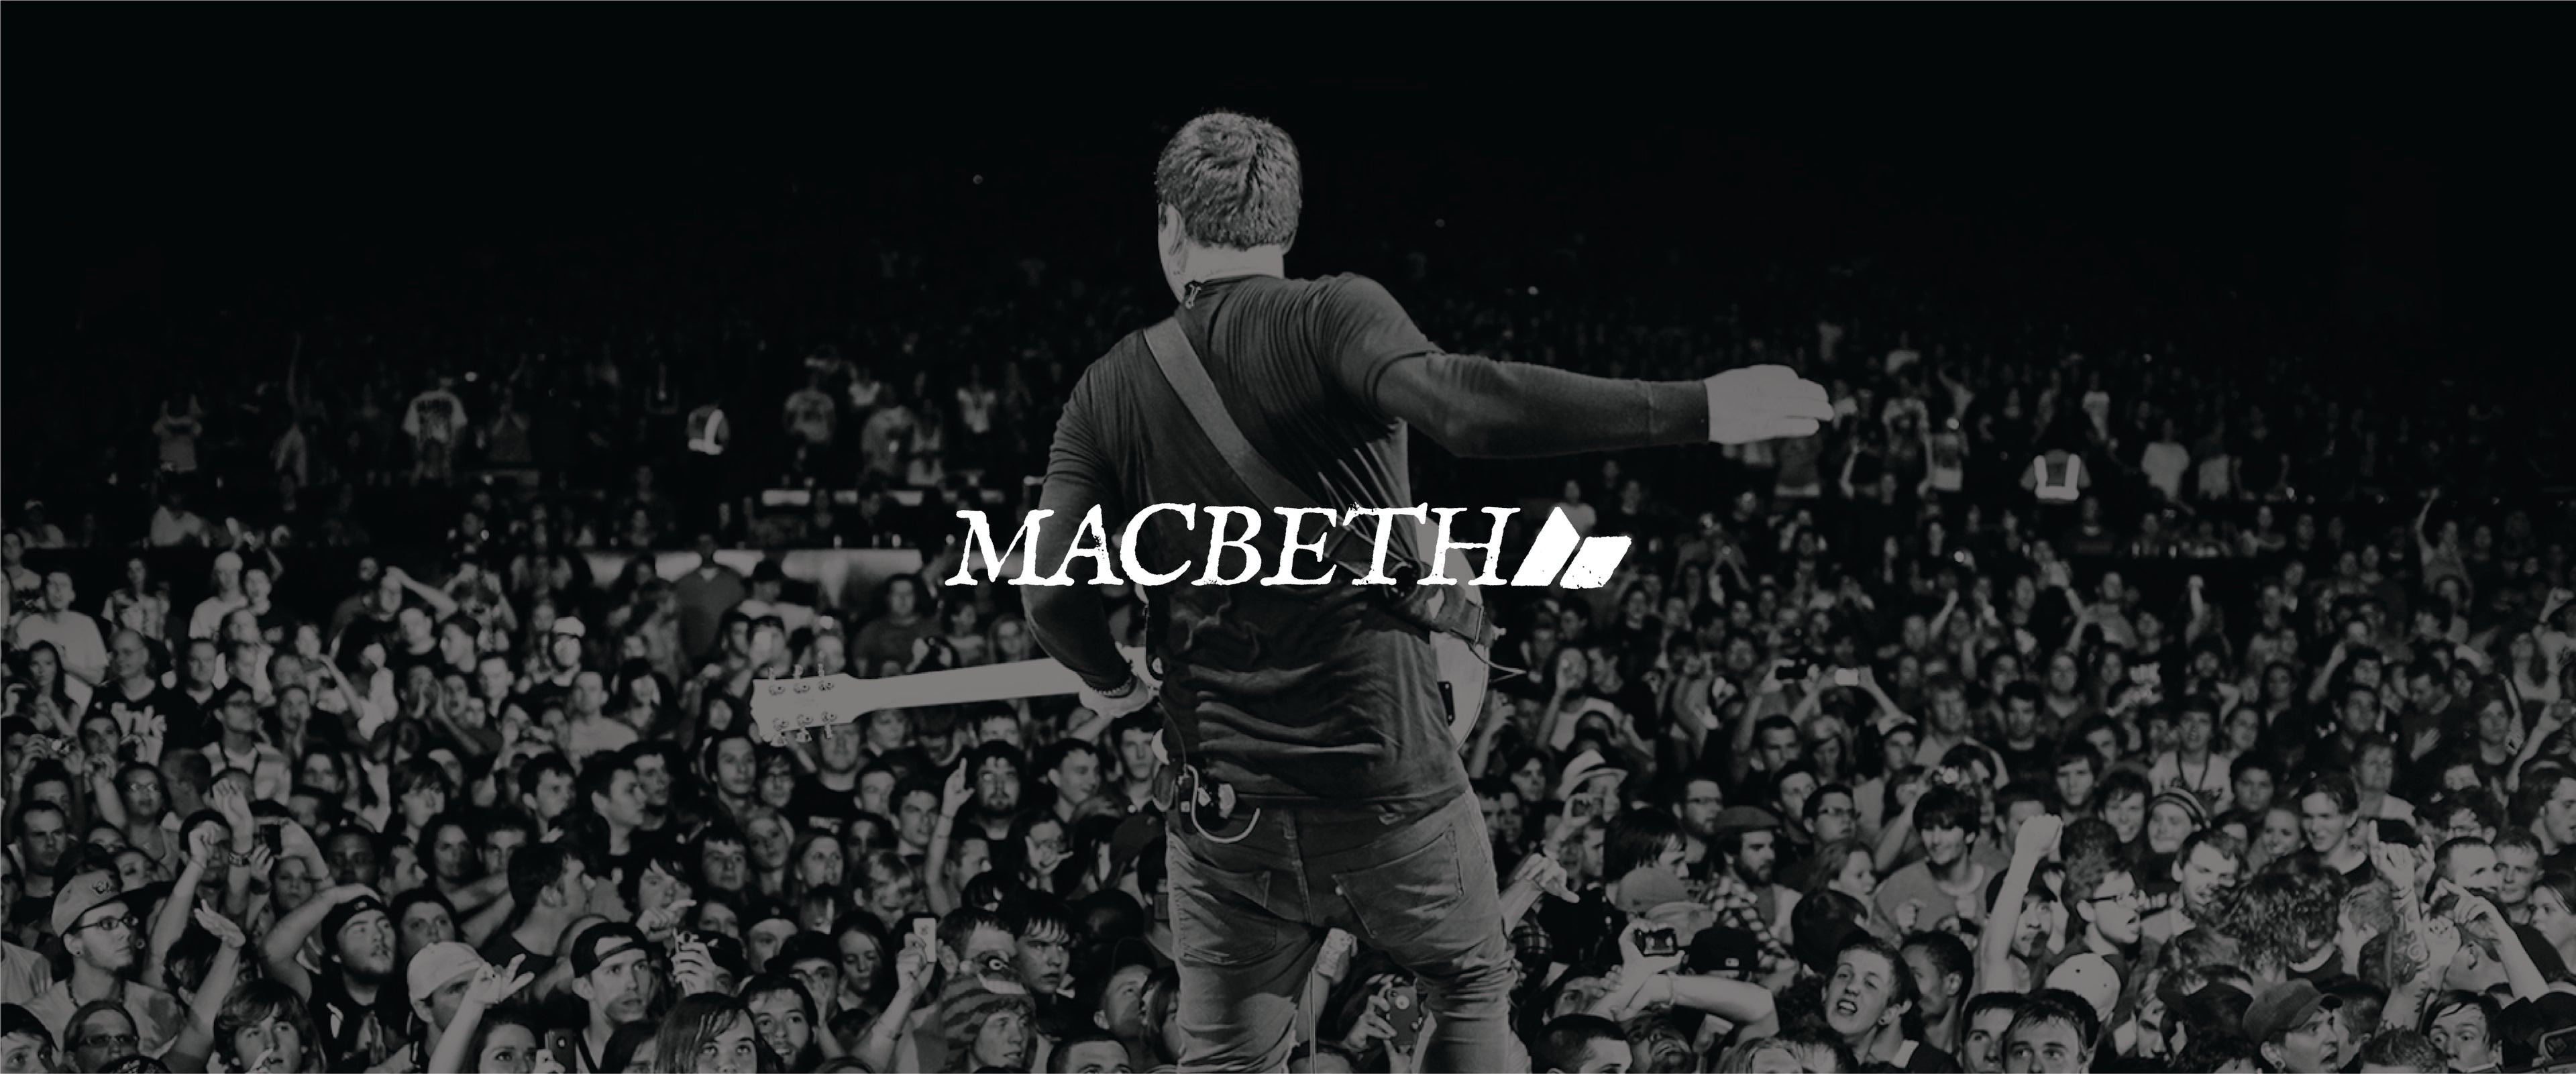 Macbeth Footwear – Macbeth Global